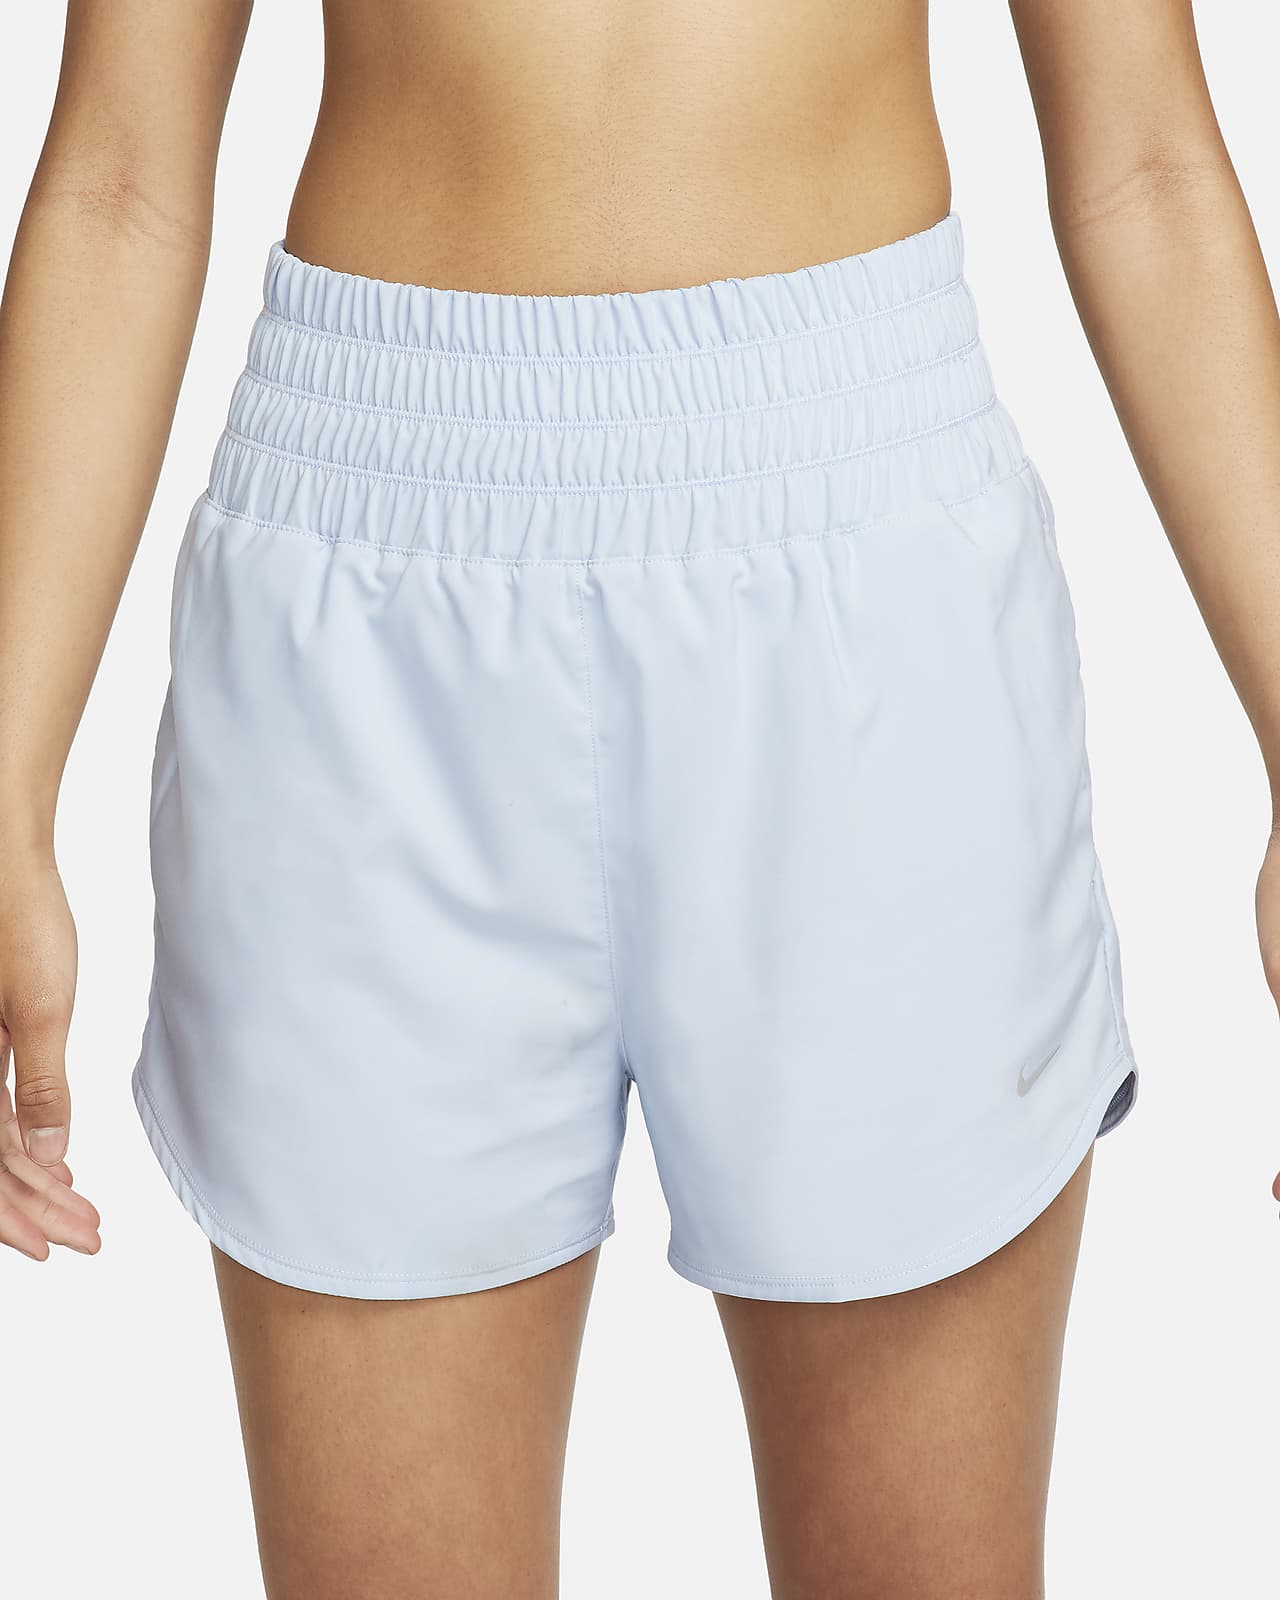 Nike Women's Pro 3 Shorts (Pink Glow/White, Small) 